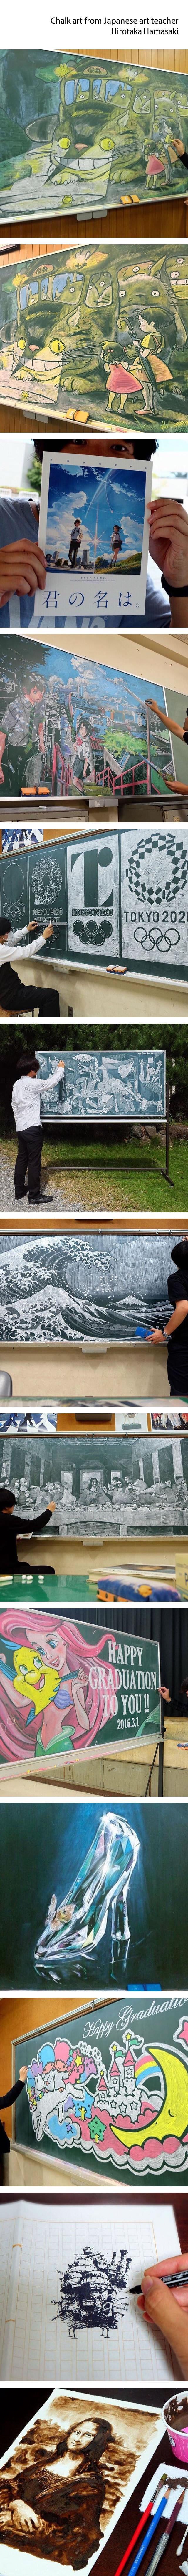 흔한 일본 미술 선생님의 그림실력